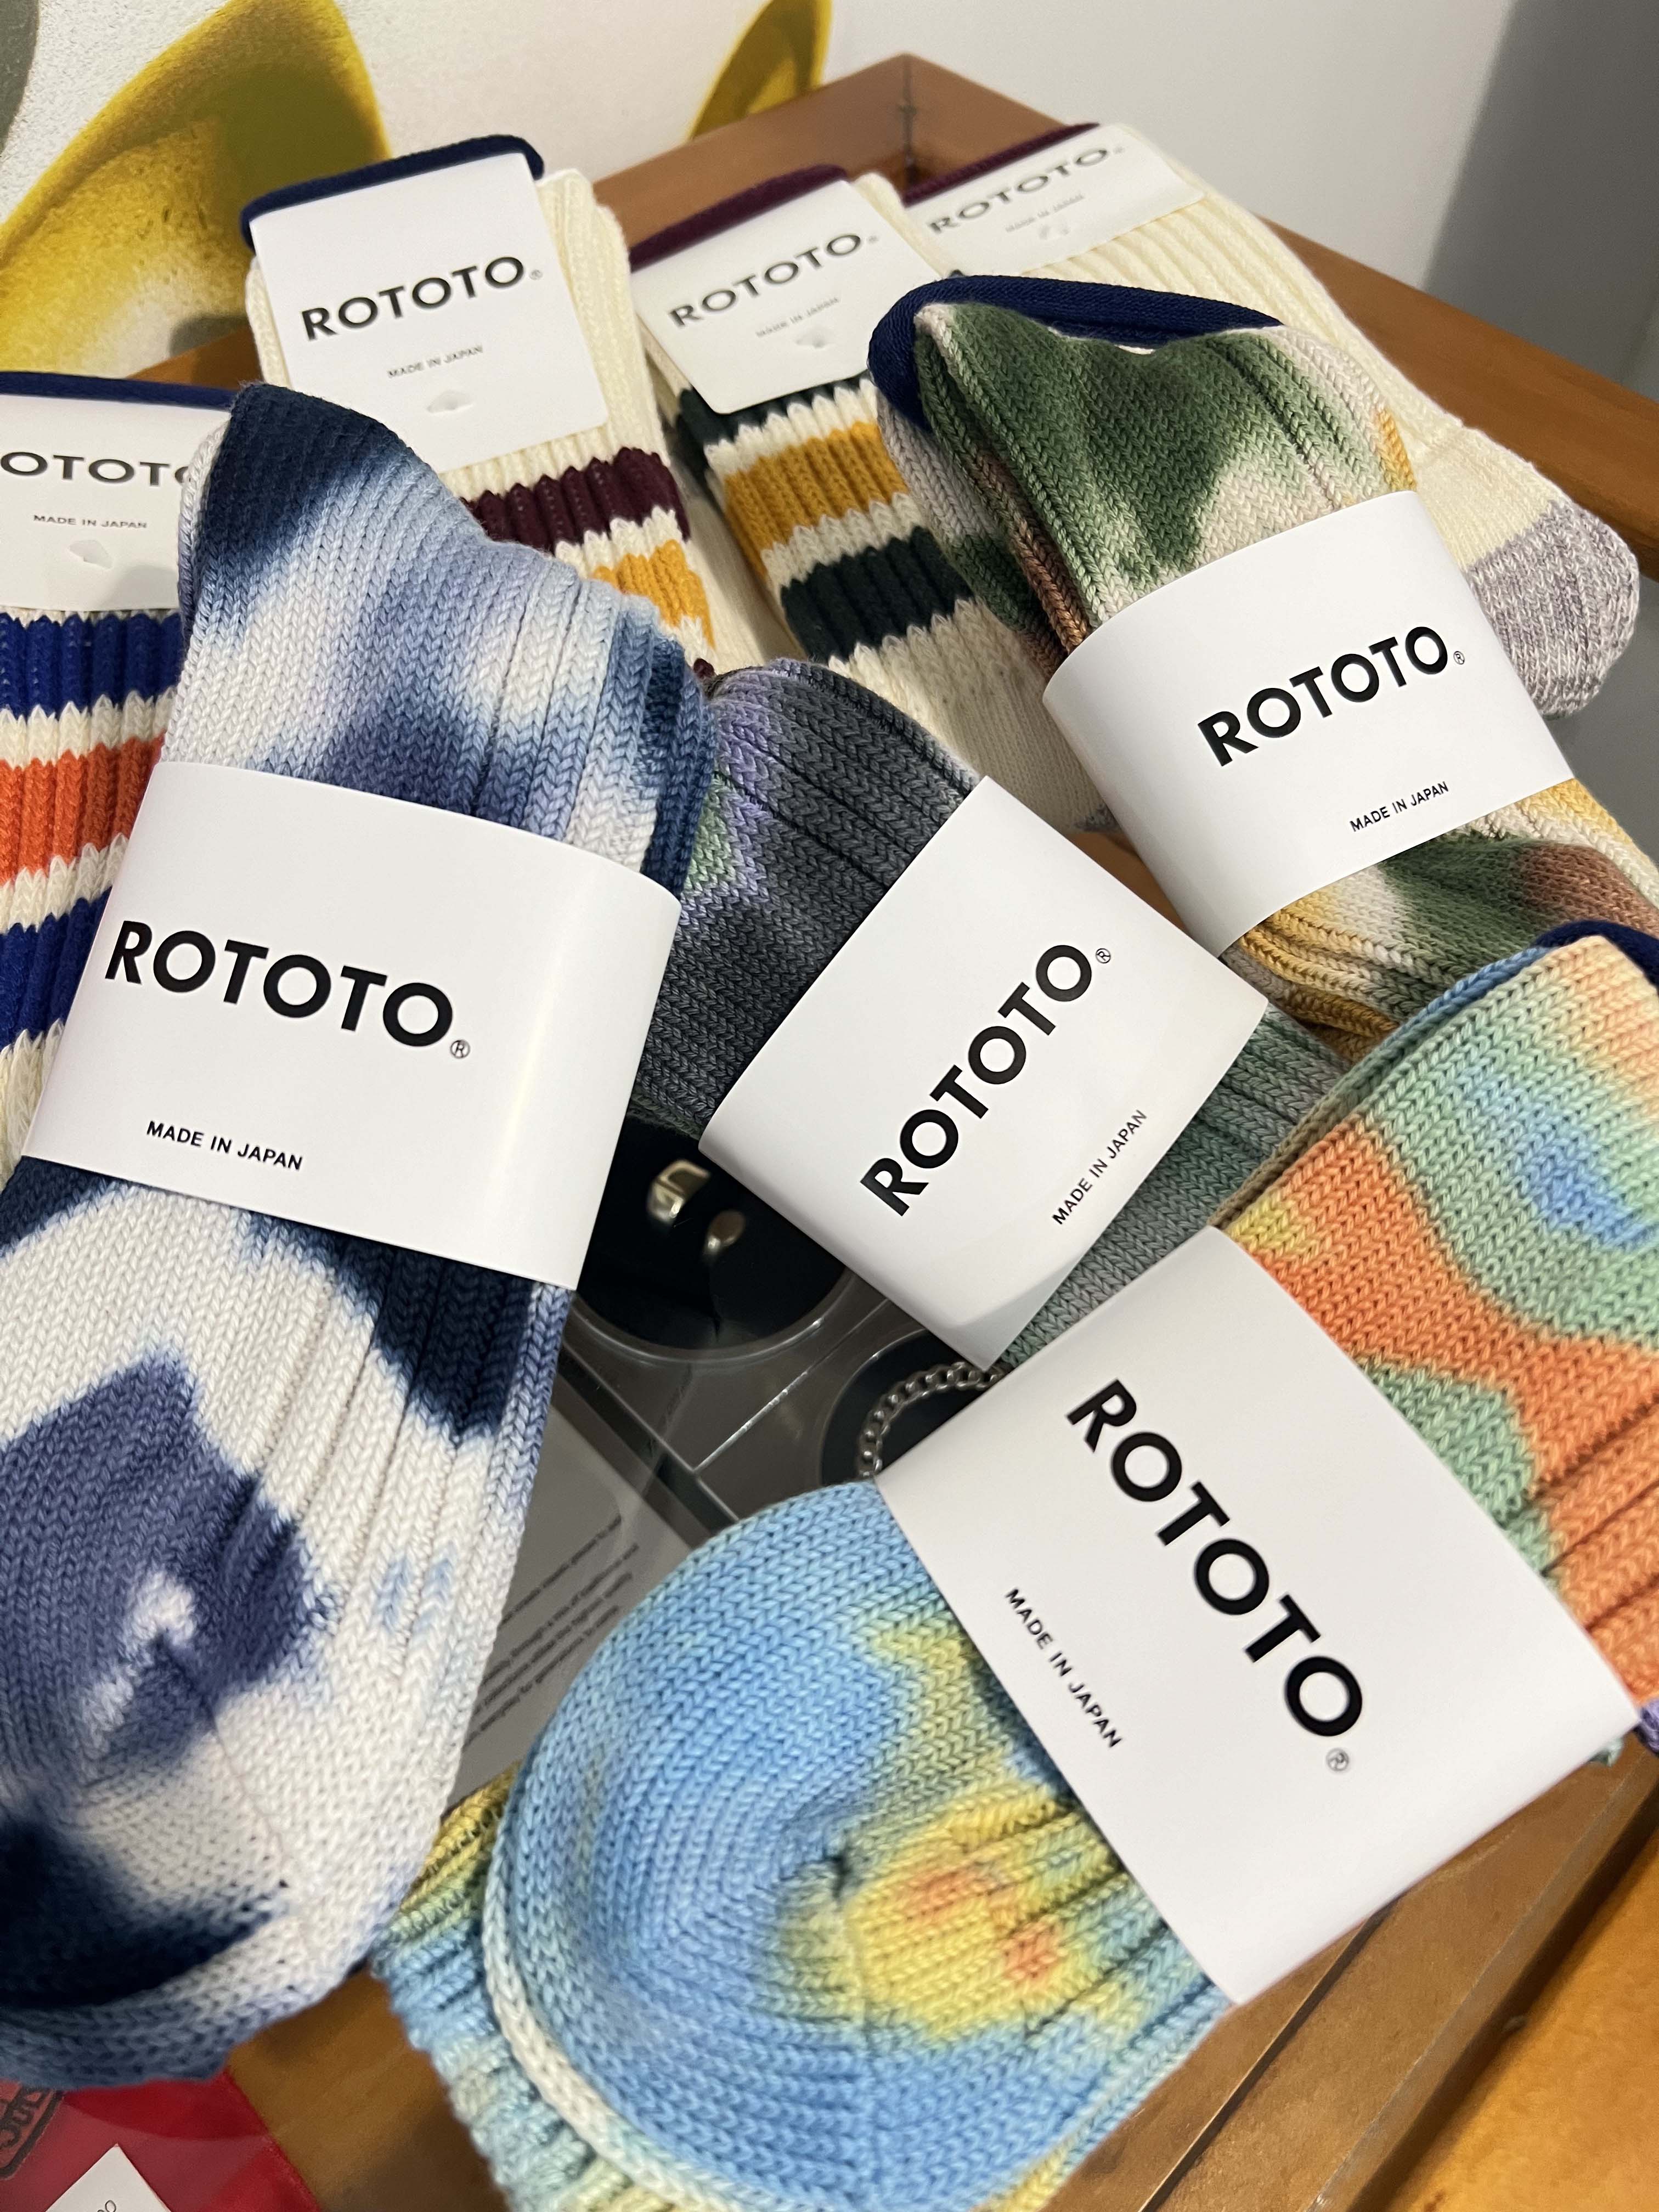 Rototo socks